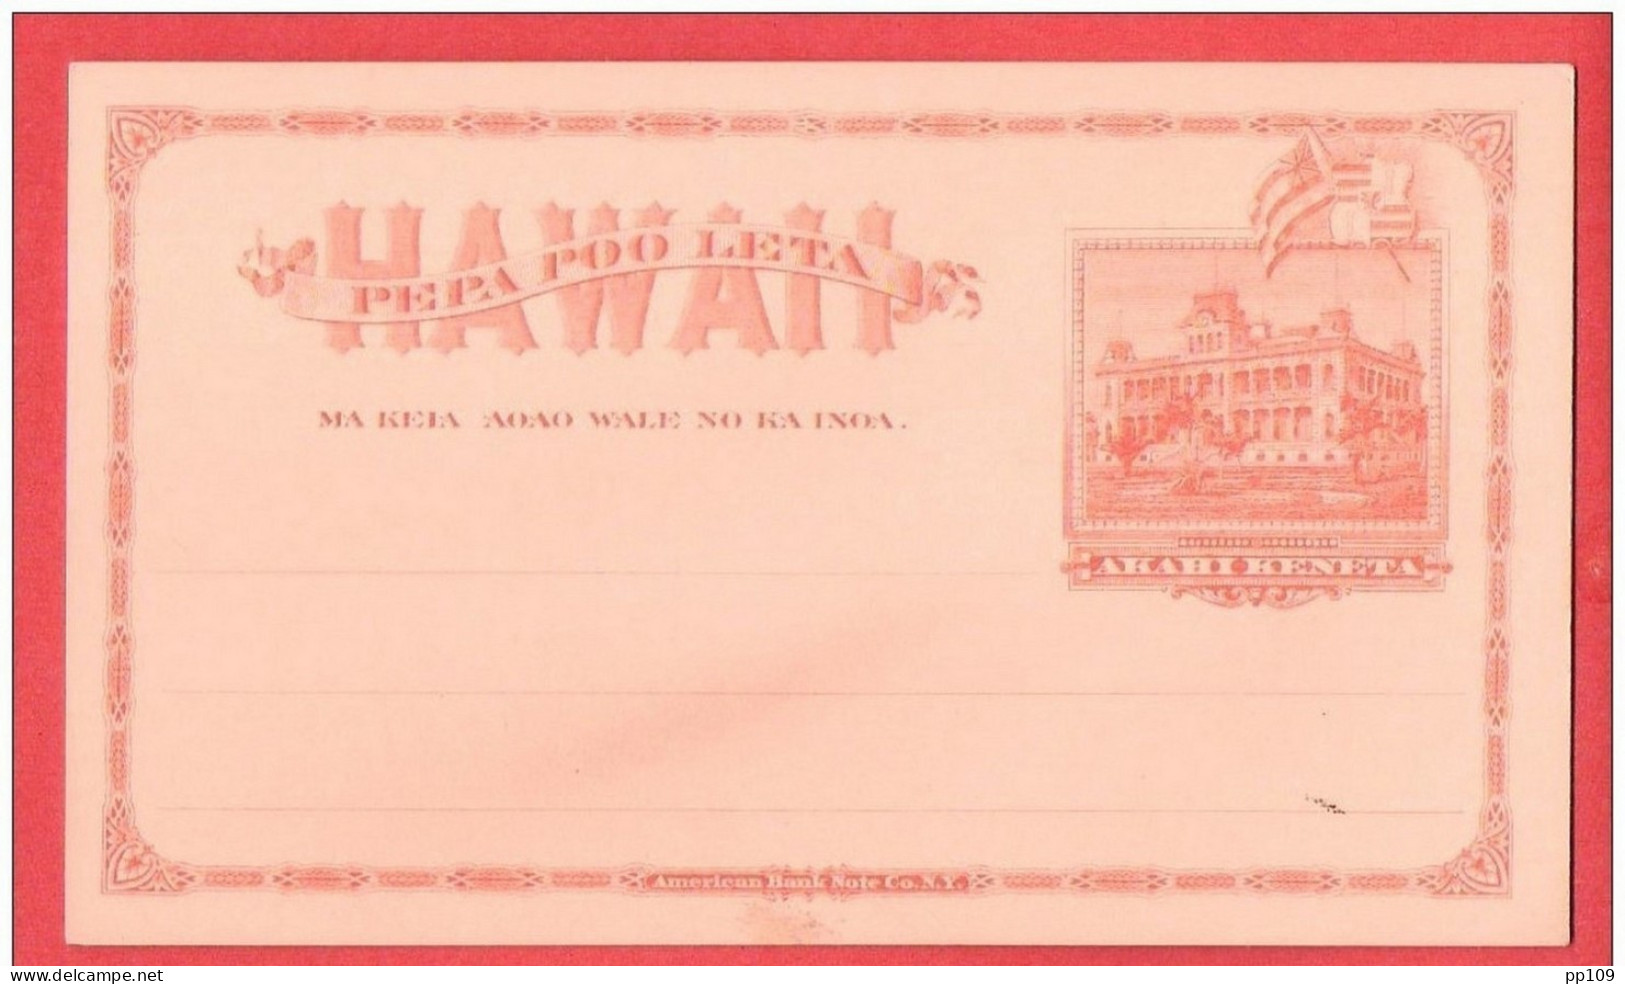 Entier Postal Neuf HAWAAI   TB état   AKAHIKENETA - Hawai